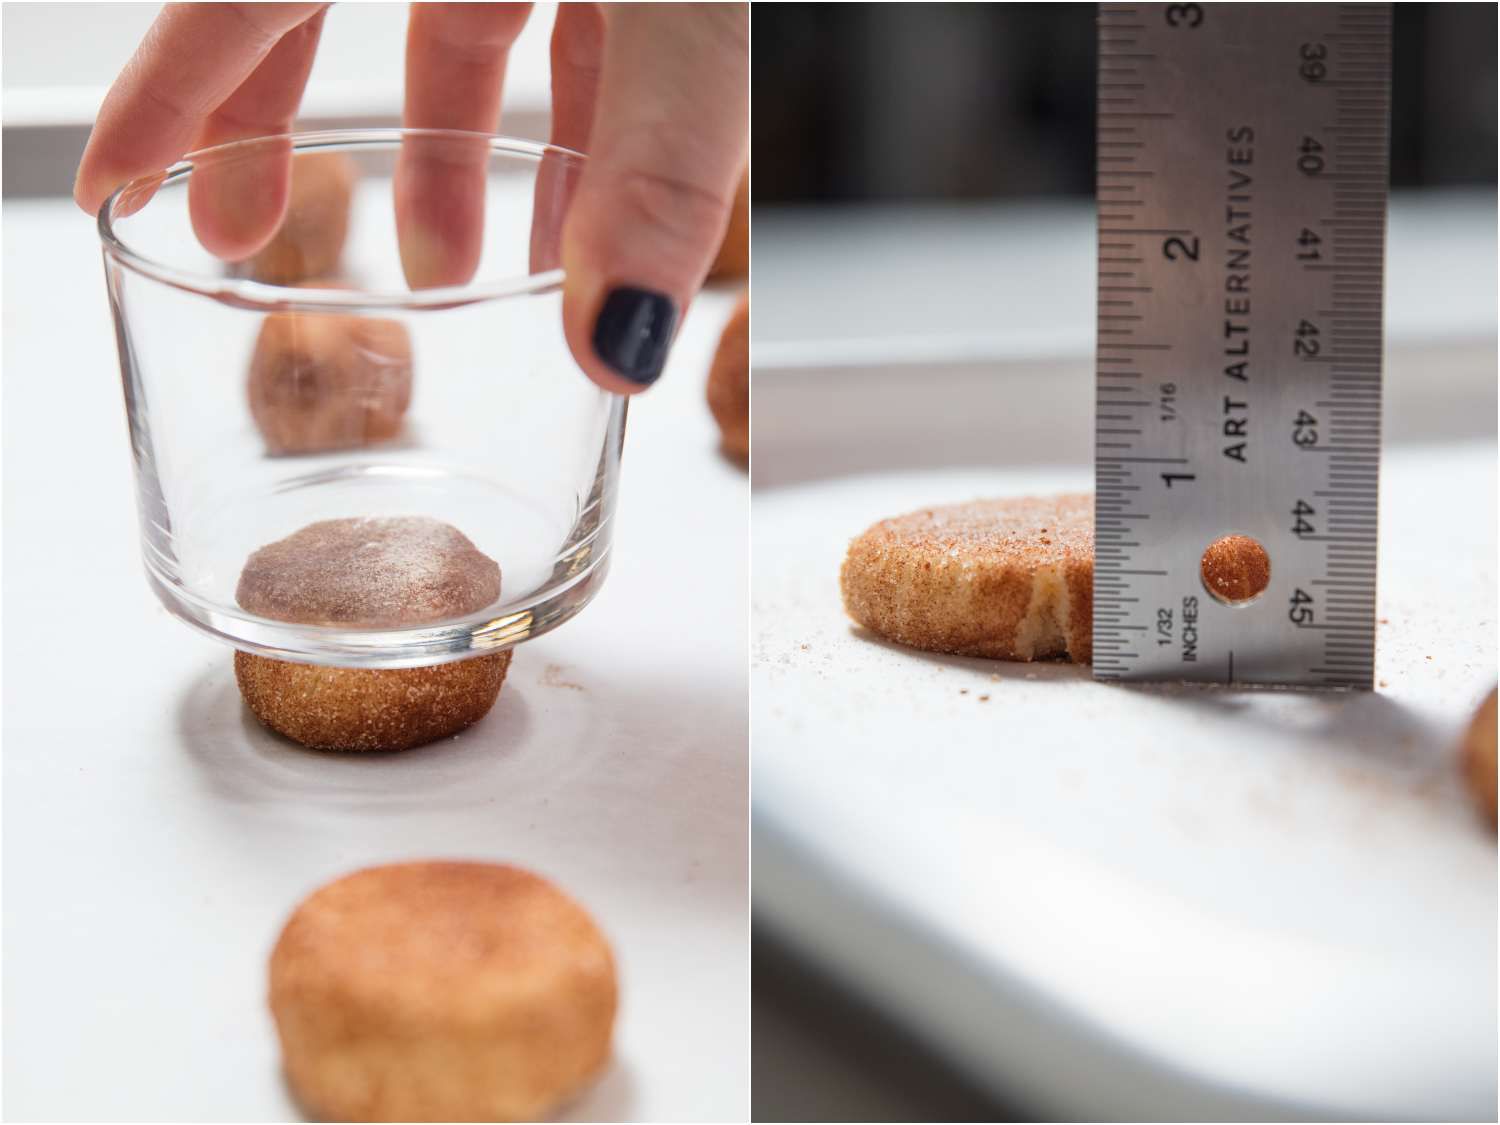 用玻璃杯底按压士力饼干面团的部分，用半英寸的尺测量它的厚度。gydF4y2Ba